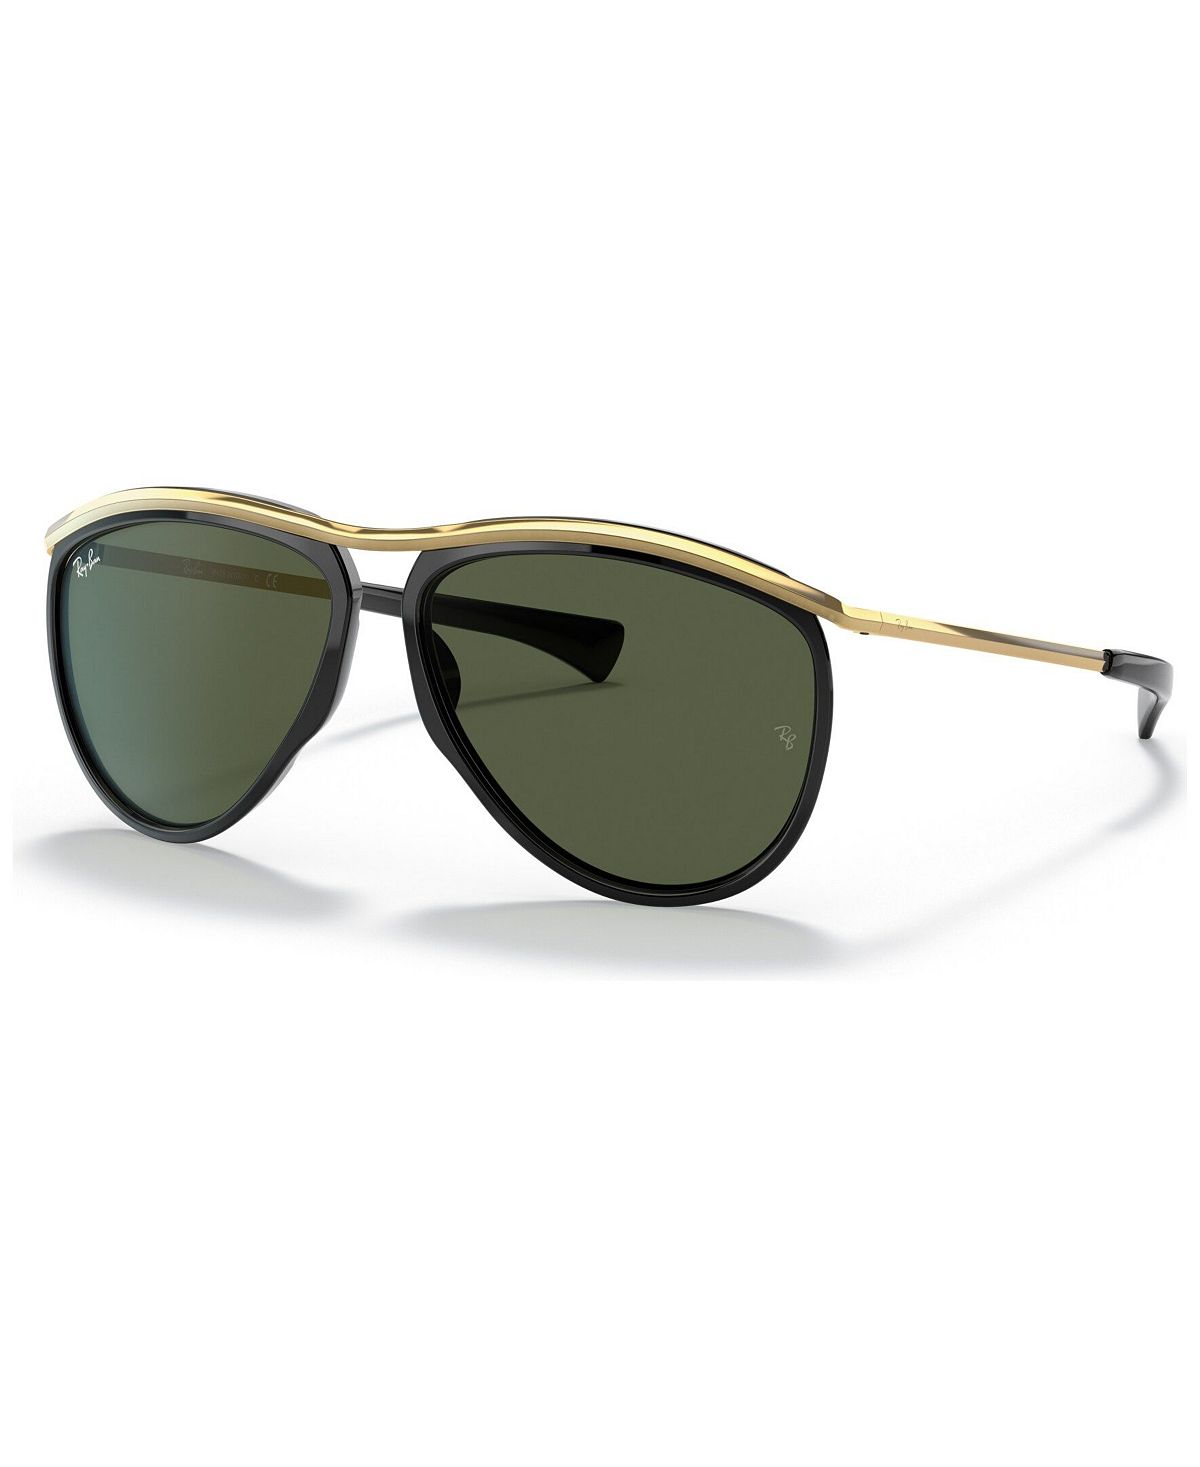 Солнцезащитные очки olympian aviator, rb2219 59 Ray-Ban, мульти